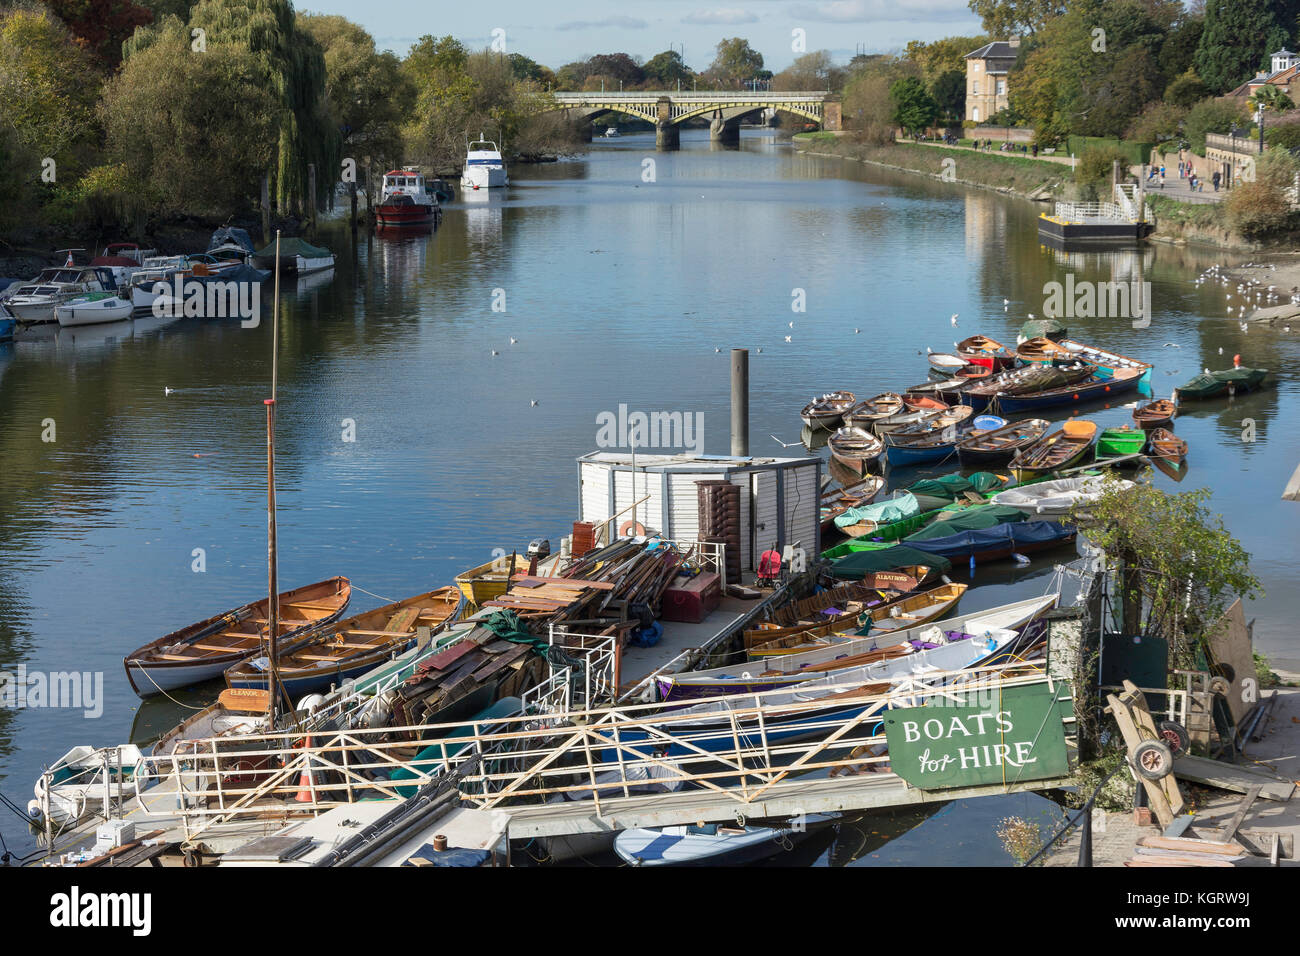 Embarcadère sur la rivière Thames, Richmond, London Borough of Richmond upon Thames, Grand Londres, Angleterre, Royaume-Uni Banque D'Images